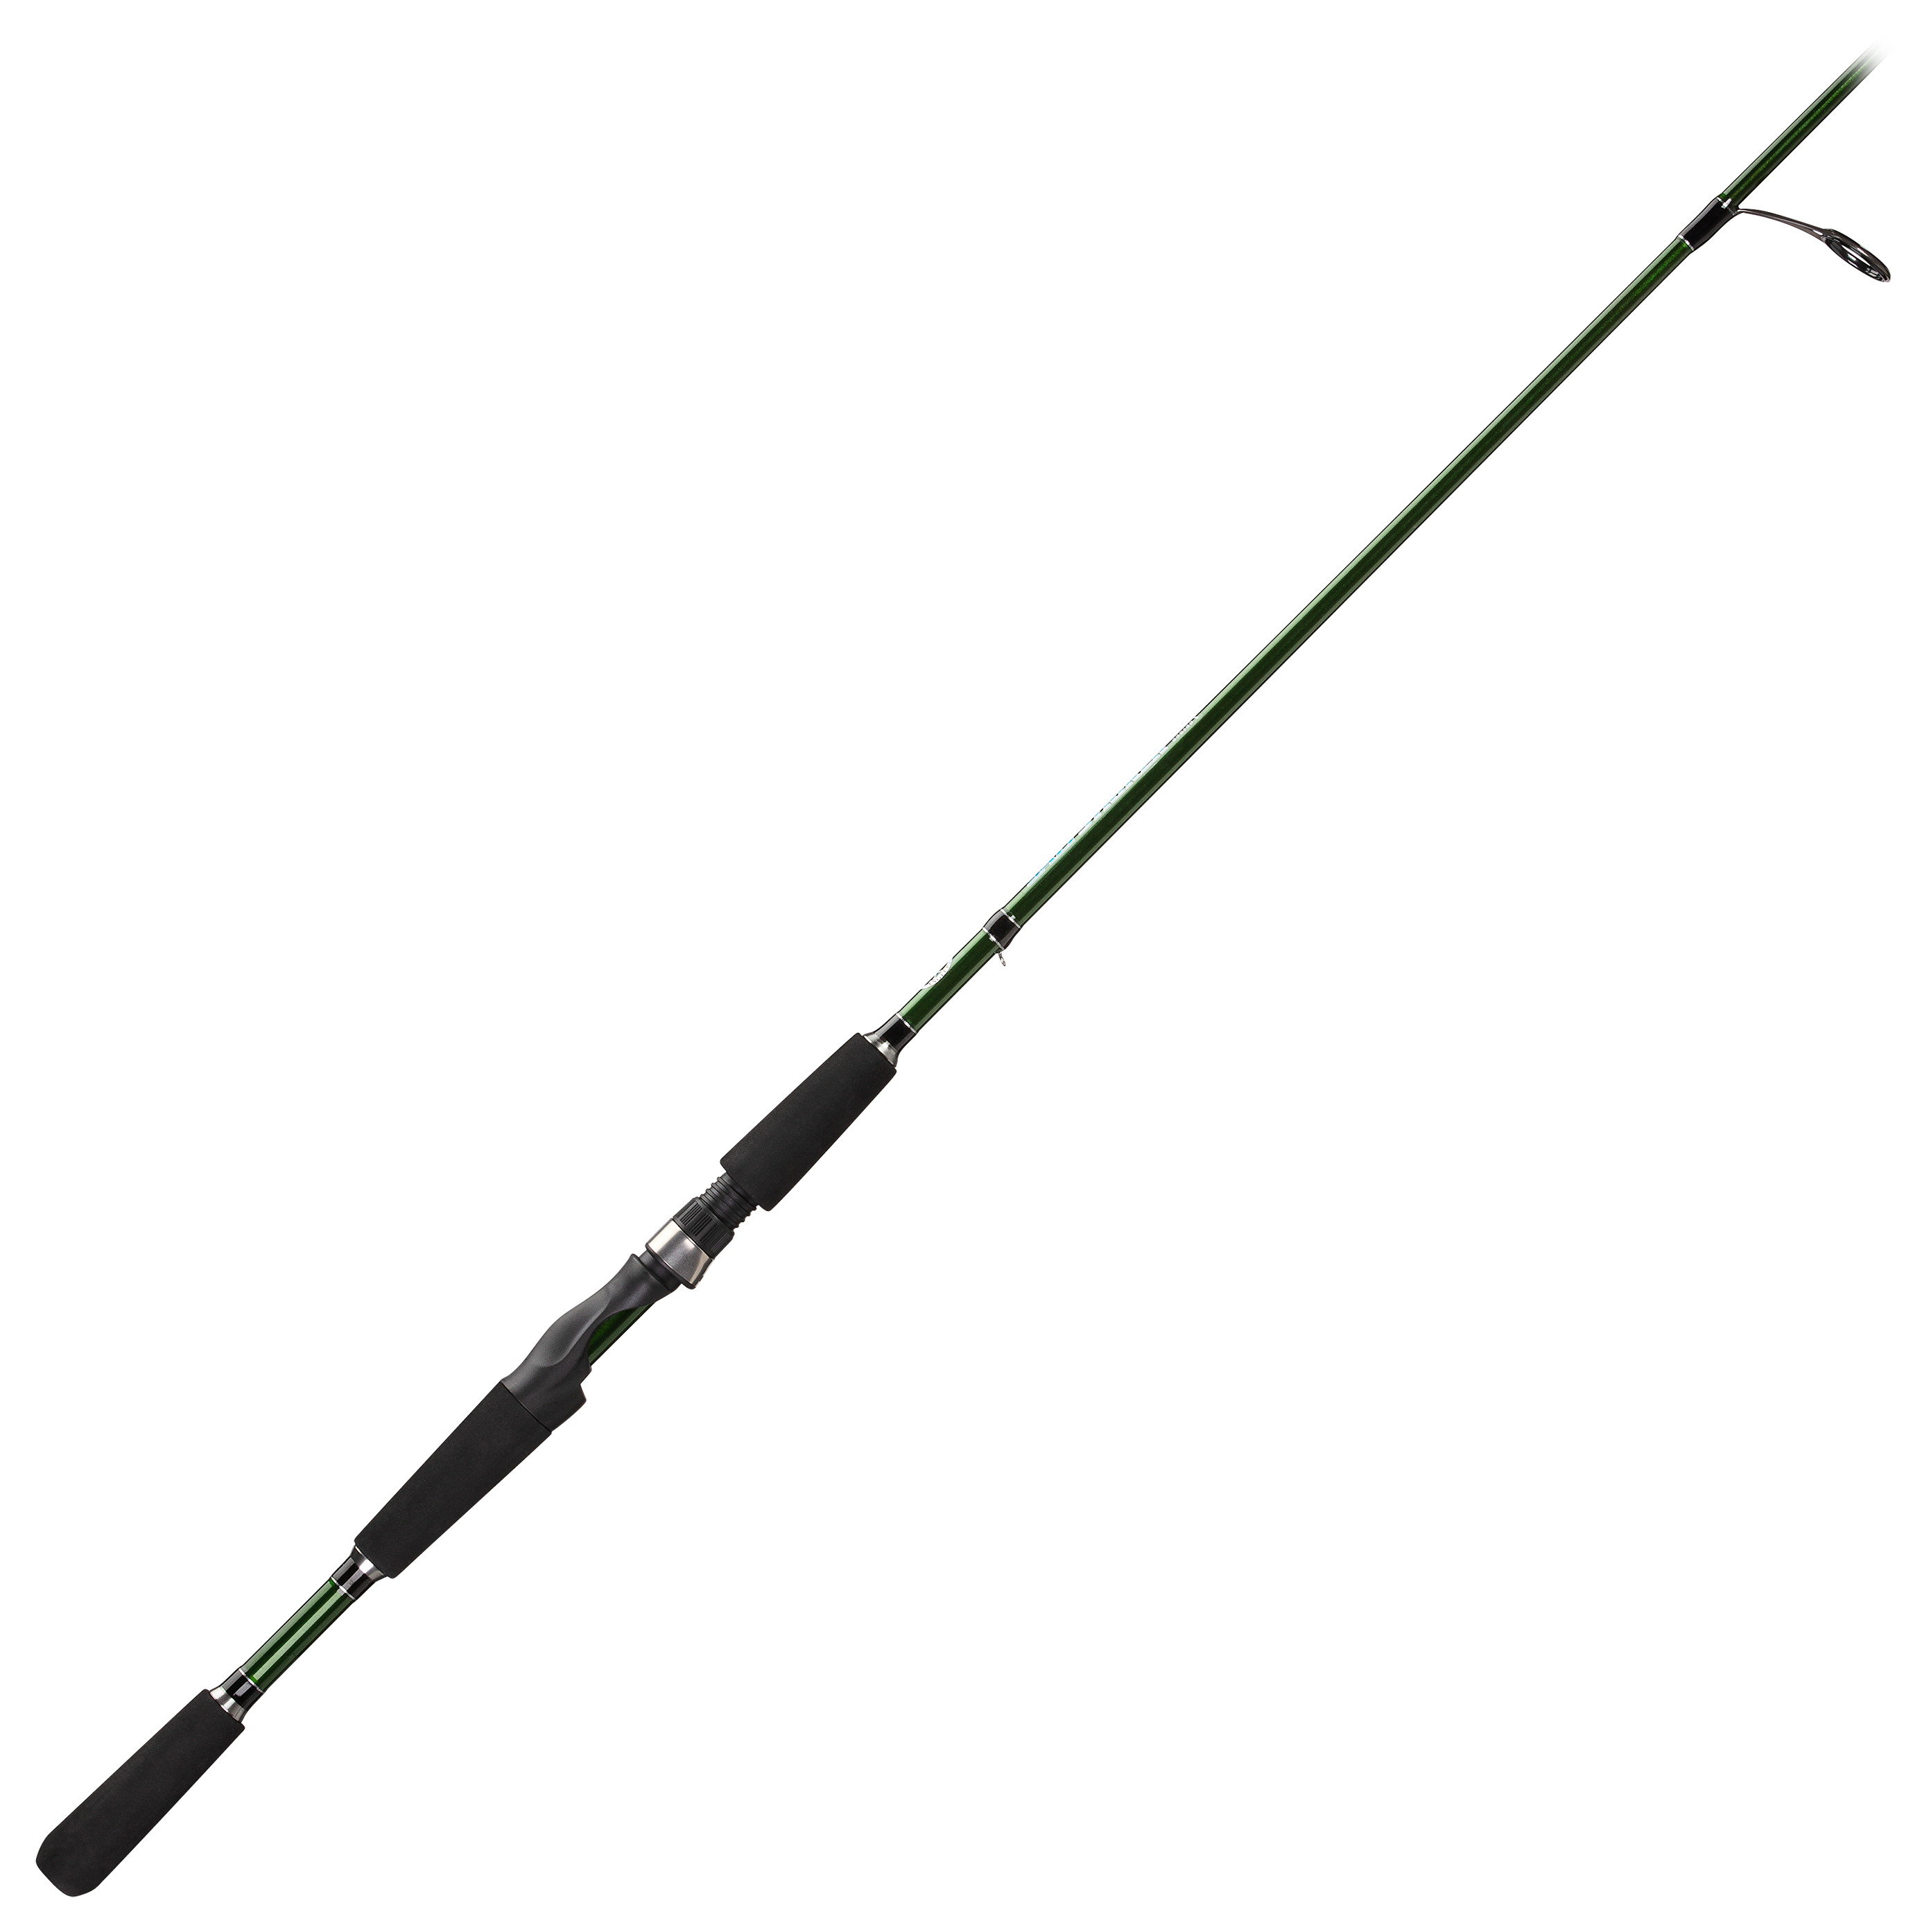 Review: Bass Pro Shops - Offshore Angler - Jigging Rod - OM66XXHT